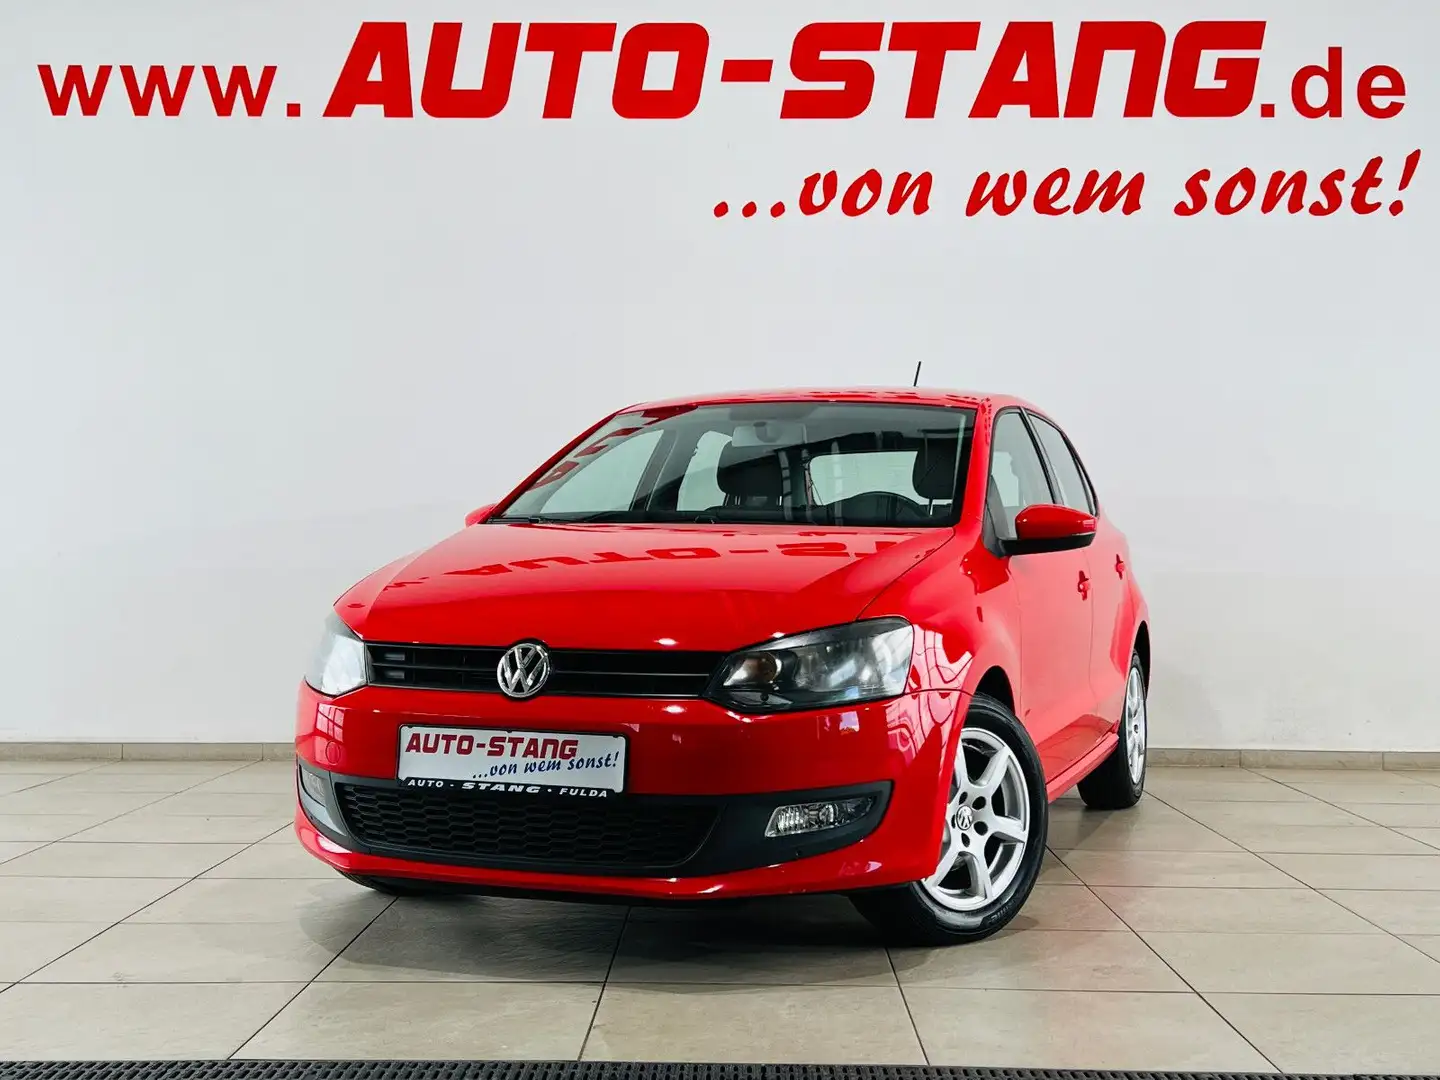 Volkswagen Polo Limousine in Rot gebraucht in Fulda für € 8.490,-